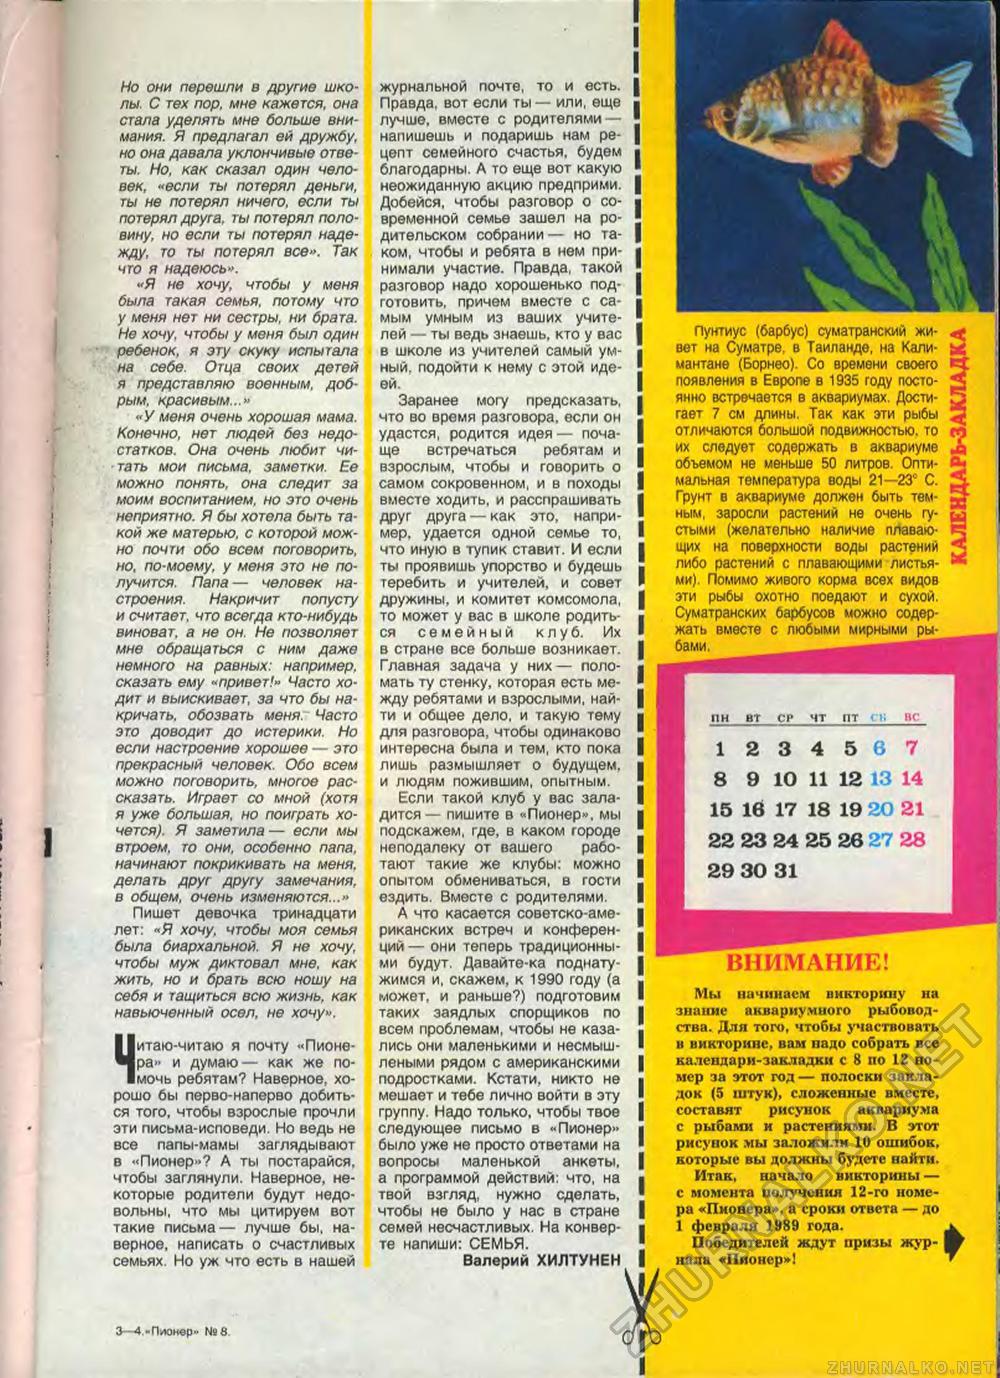  1988-08,  19